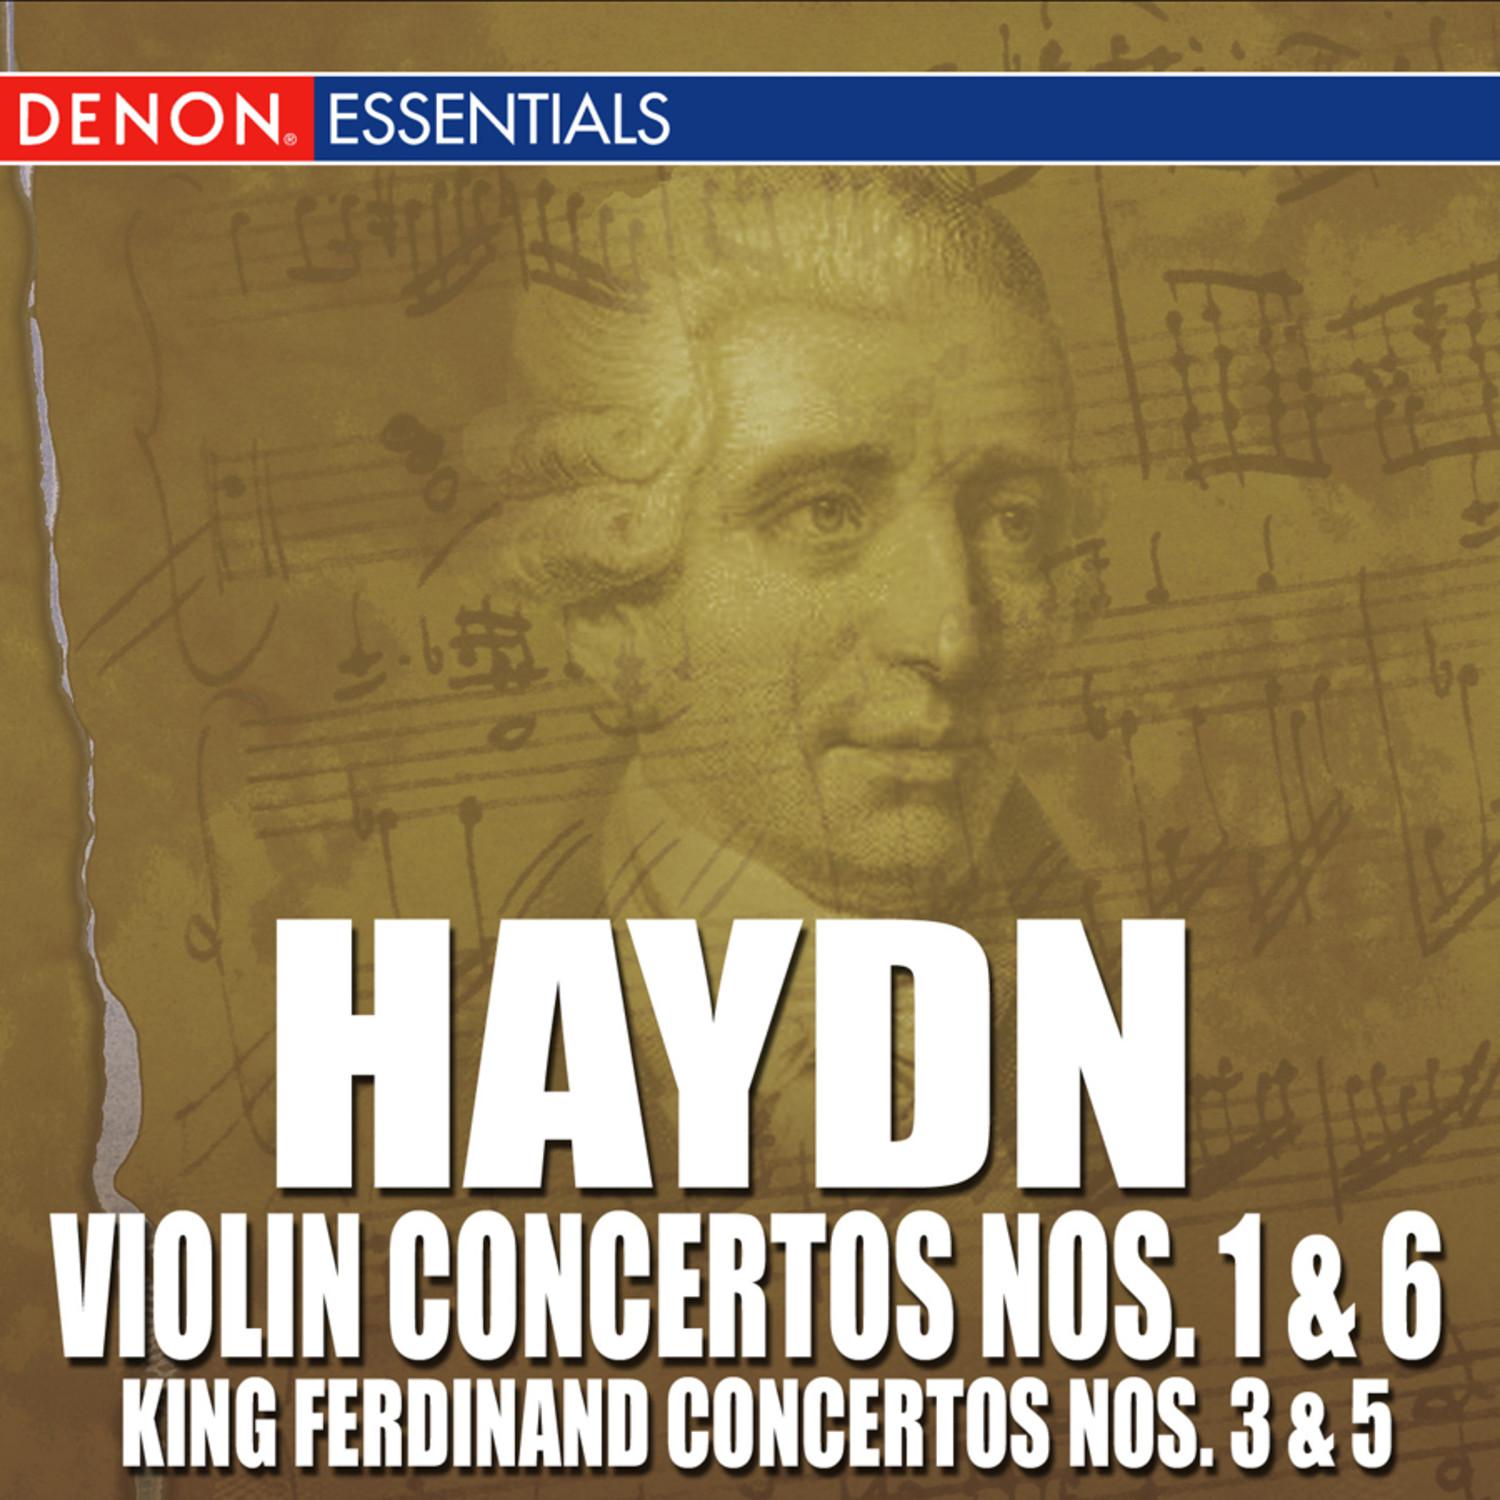 Concerto for Violin & Orchestra No. 1 in C major, Hob. VII a / I: I. Allegro moderato